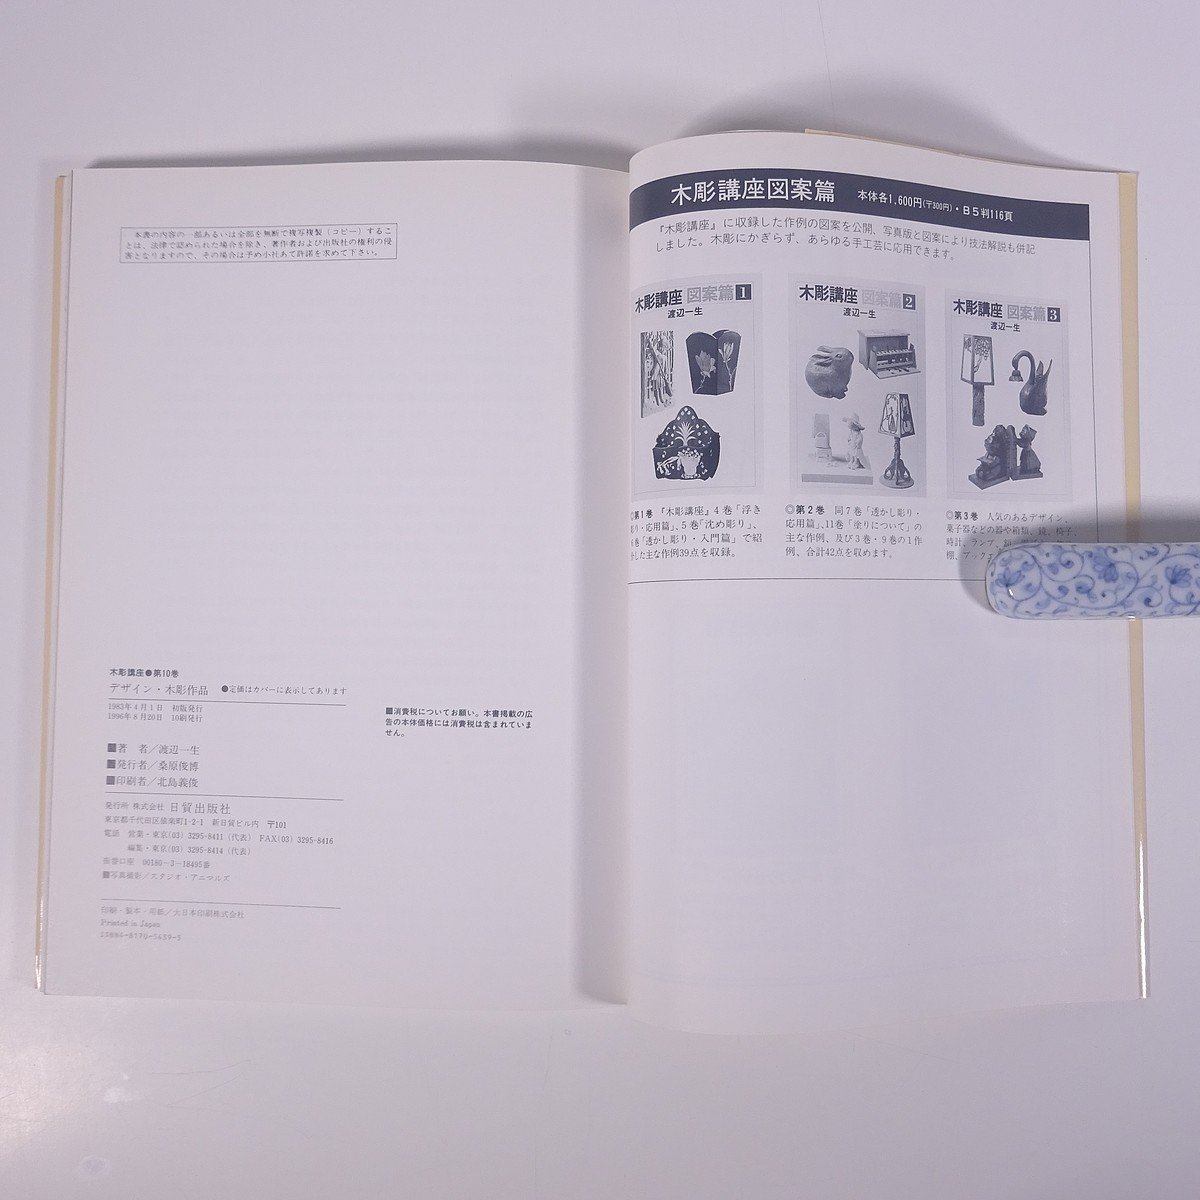  дерево гравюра курс дизайн .3 Watanabe один сырой день . выпускать фирма 1996 большой книга@ искусство изобразительное искусство прикладное искусство дерево резьба по дереву скульптура техническое руководство 